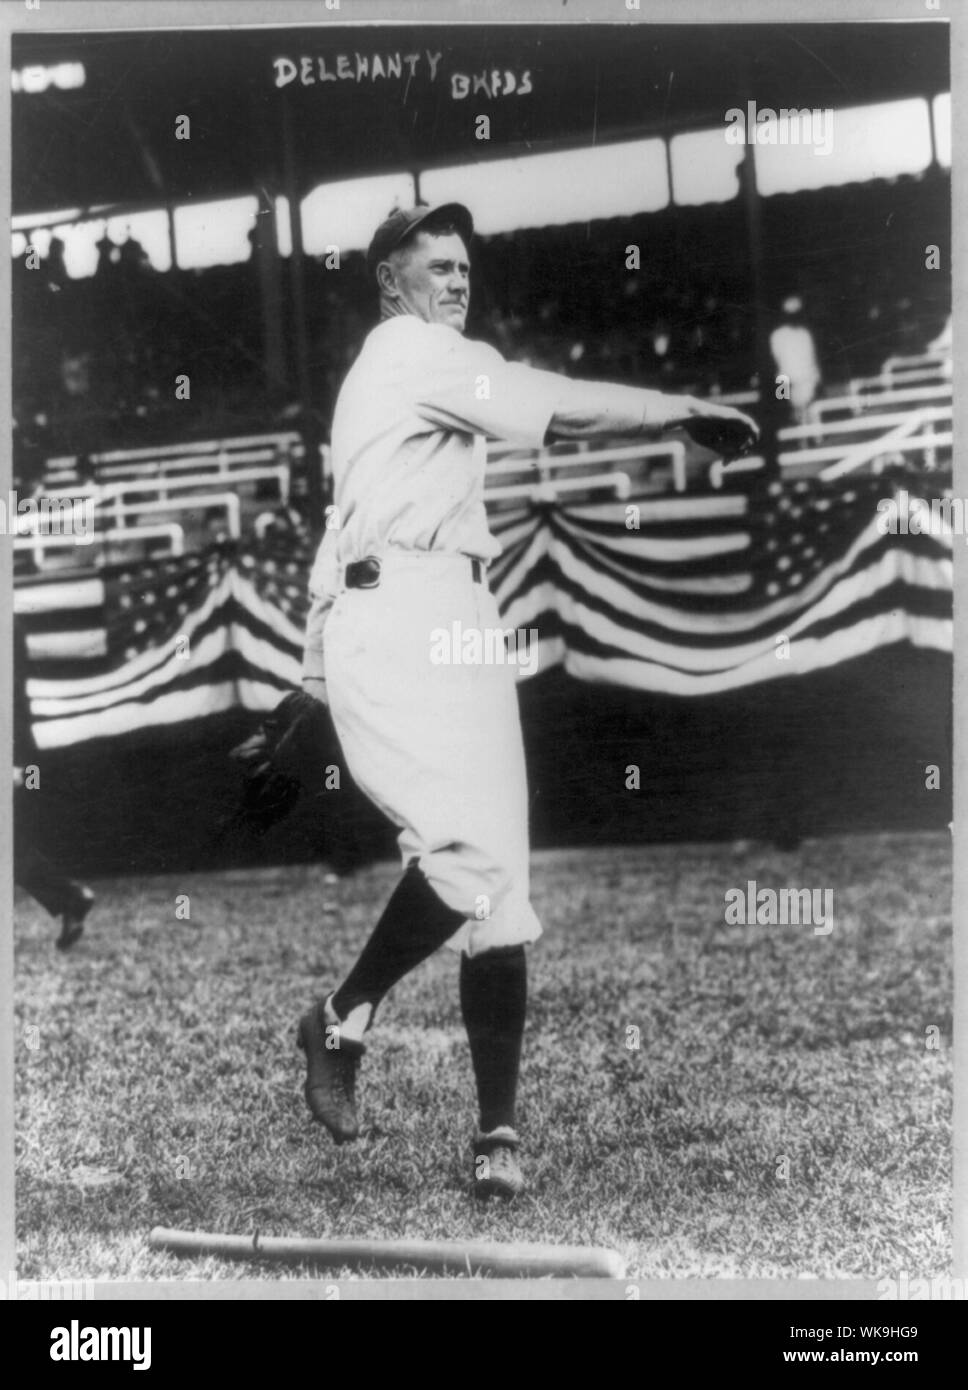 James Christopher Delahanty, baseball secondo baseman di intera lunghezza verticale, rivolto verso destra in uniforme della Brooklyn Fed, gettando il baseball Foto Stock